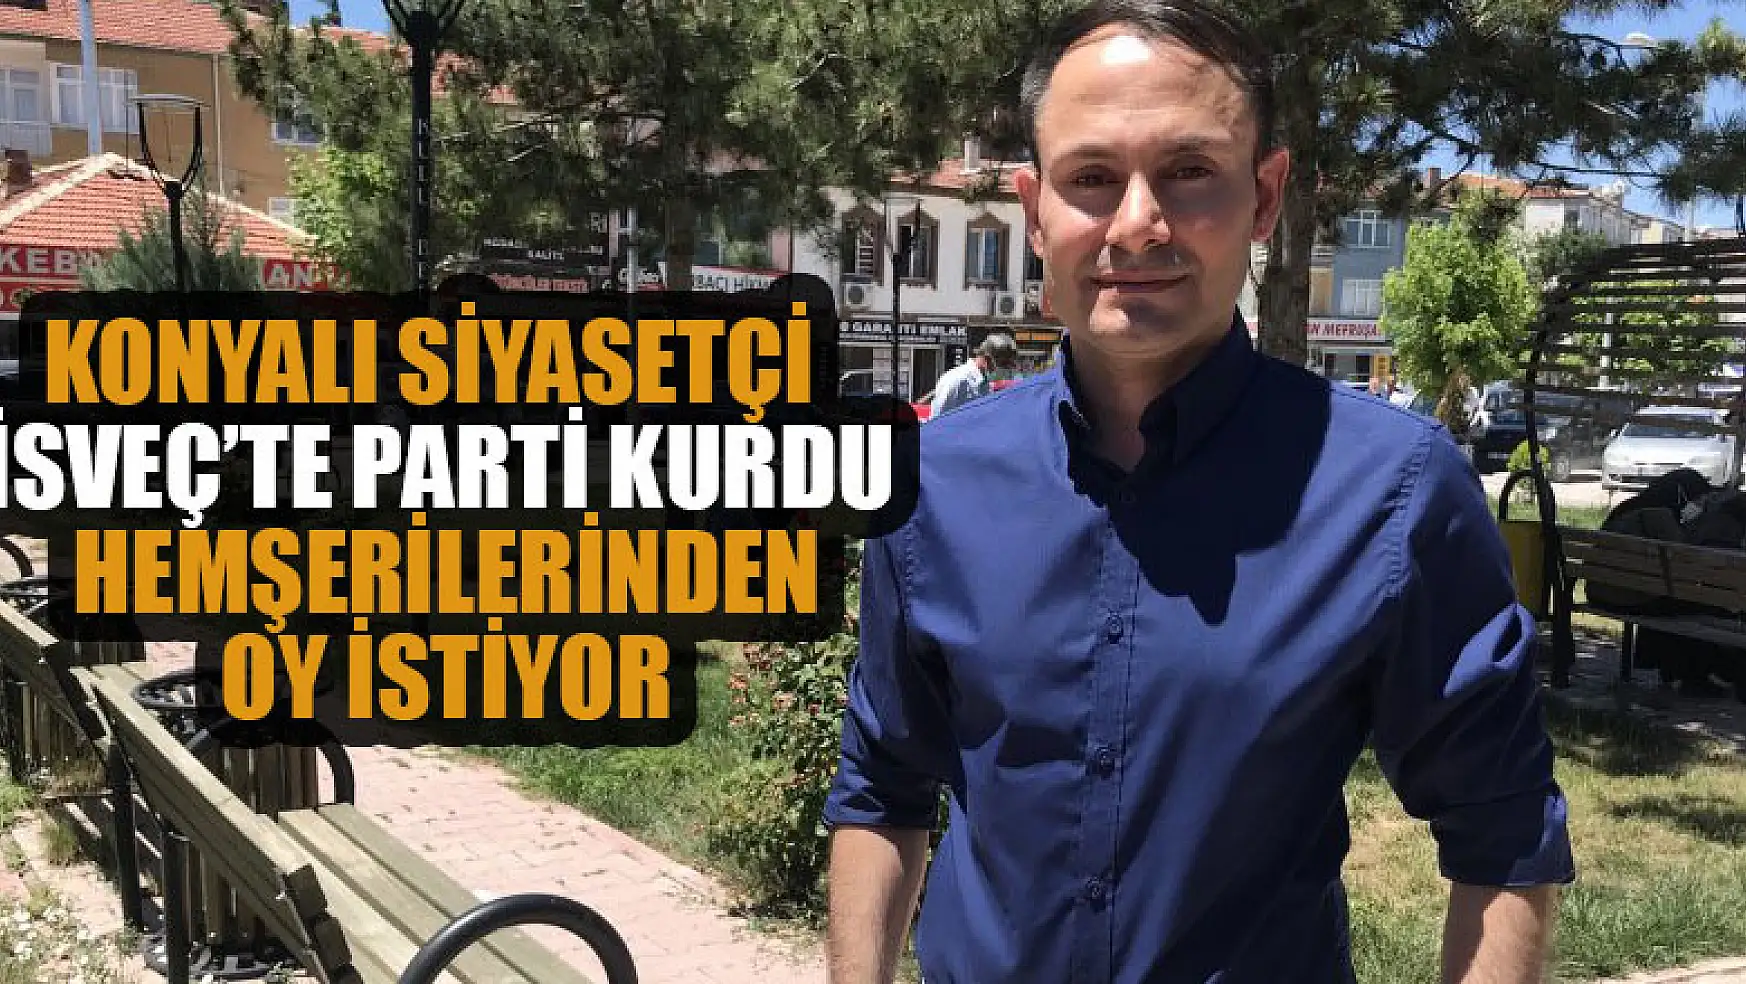 İsveç'teki seçimler için Konya'daki hemşerilerinden oy istiyor